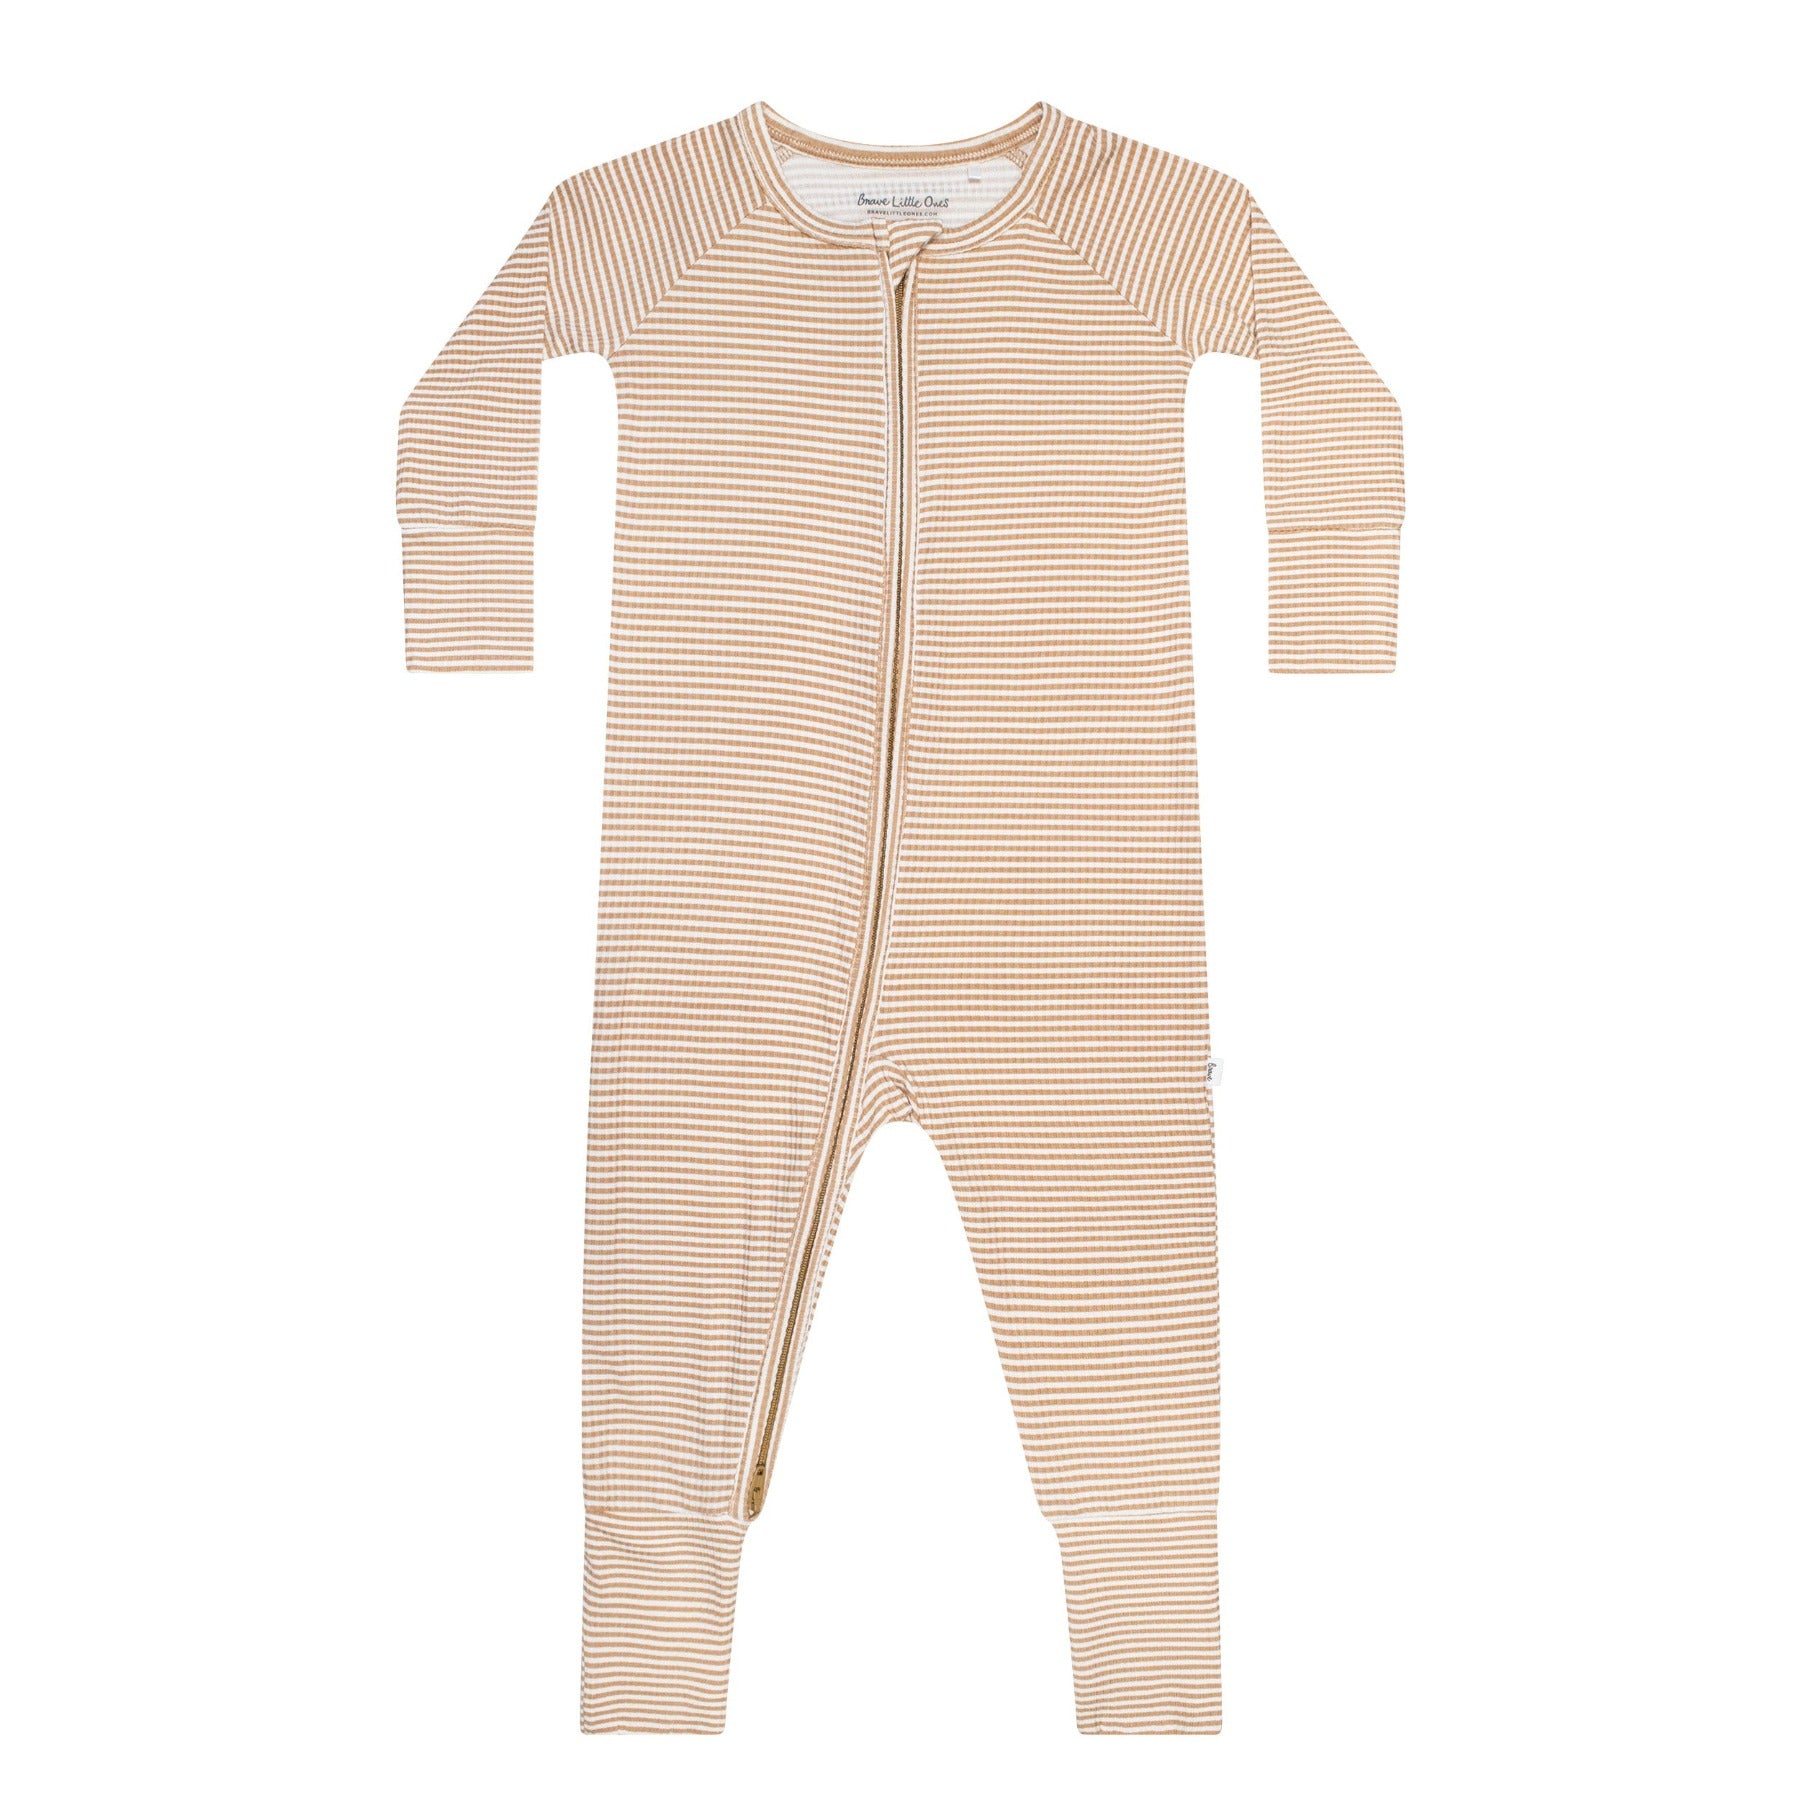 OEKO-TEX Standard 100] Beige Ribbed Baby Pajama Set